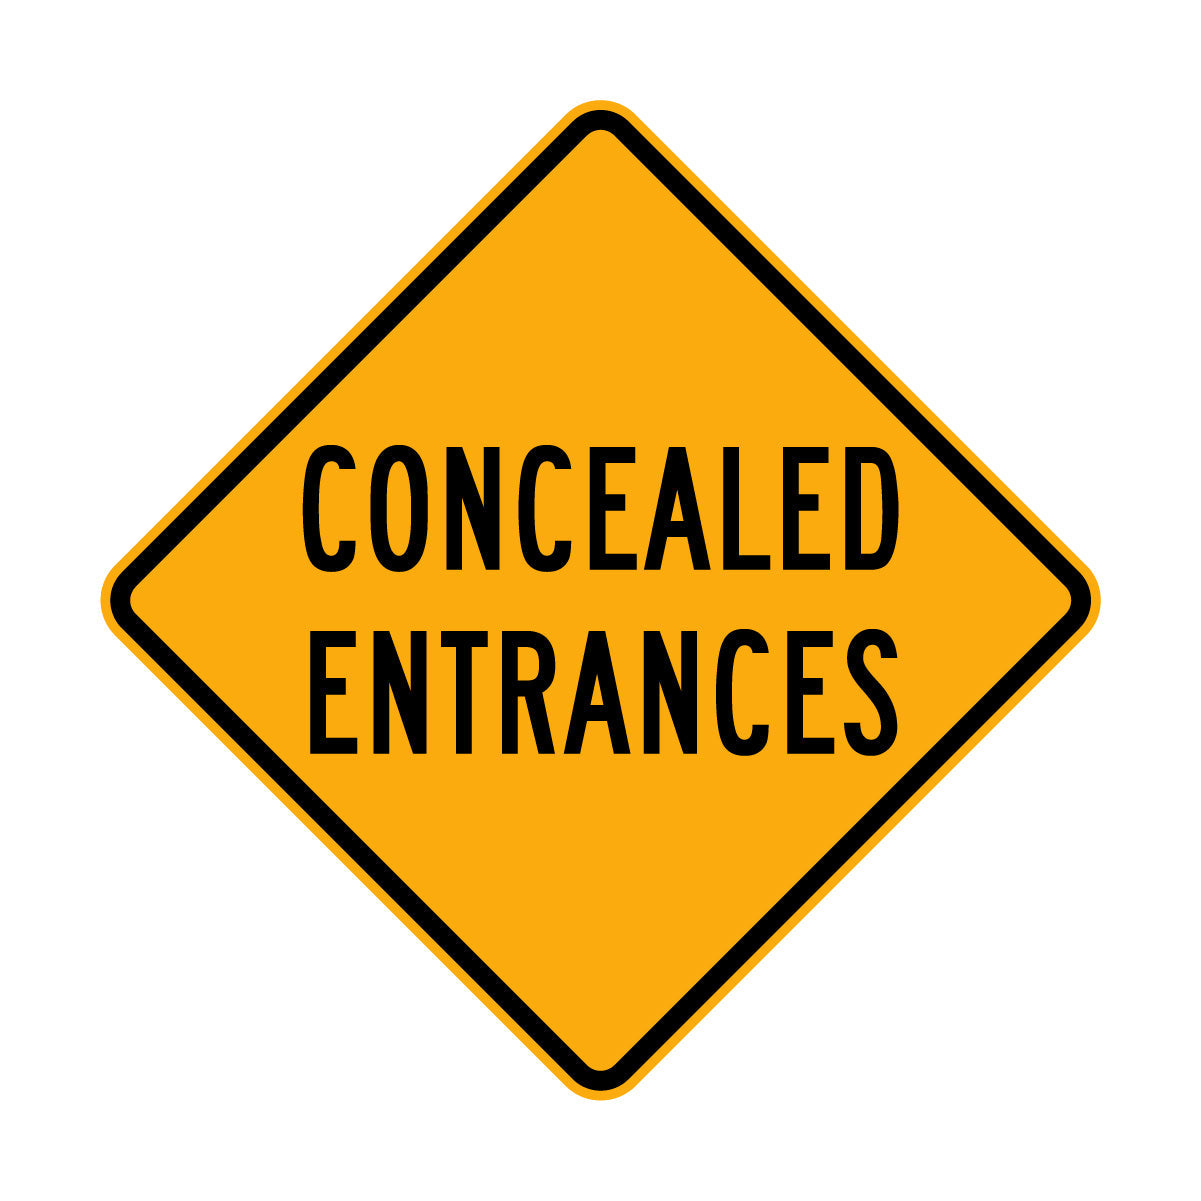 Warning: Concealed Entrances Sign